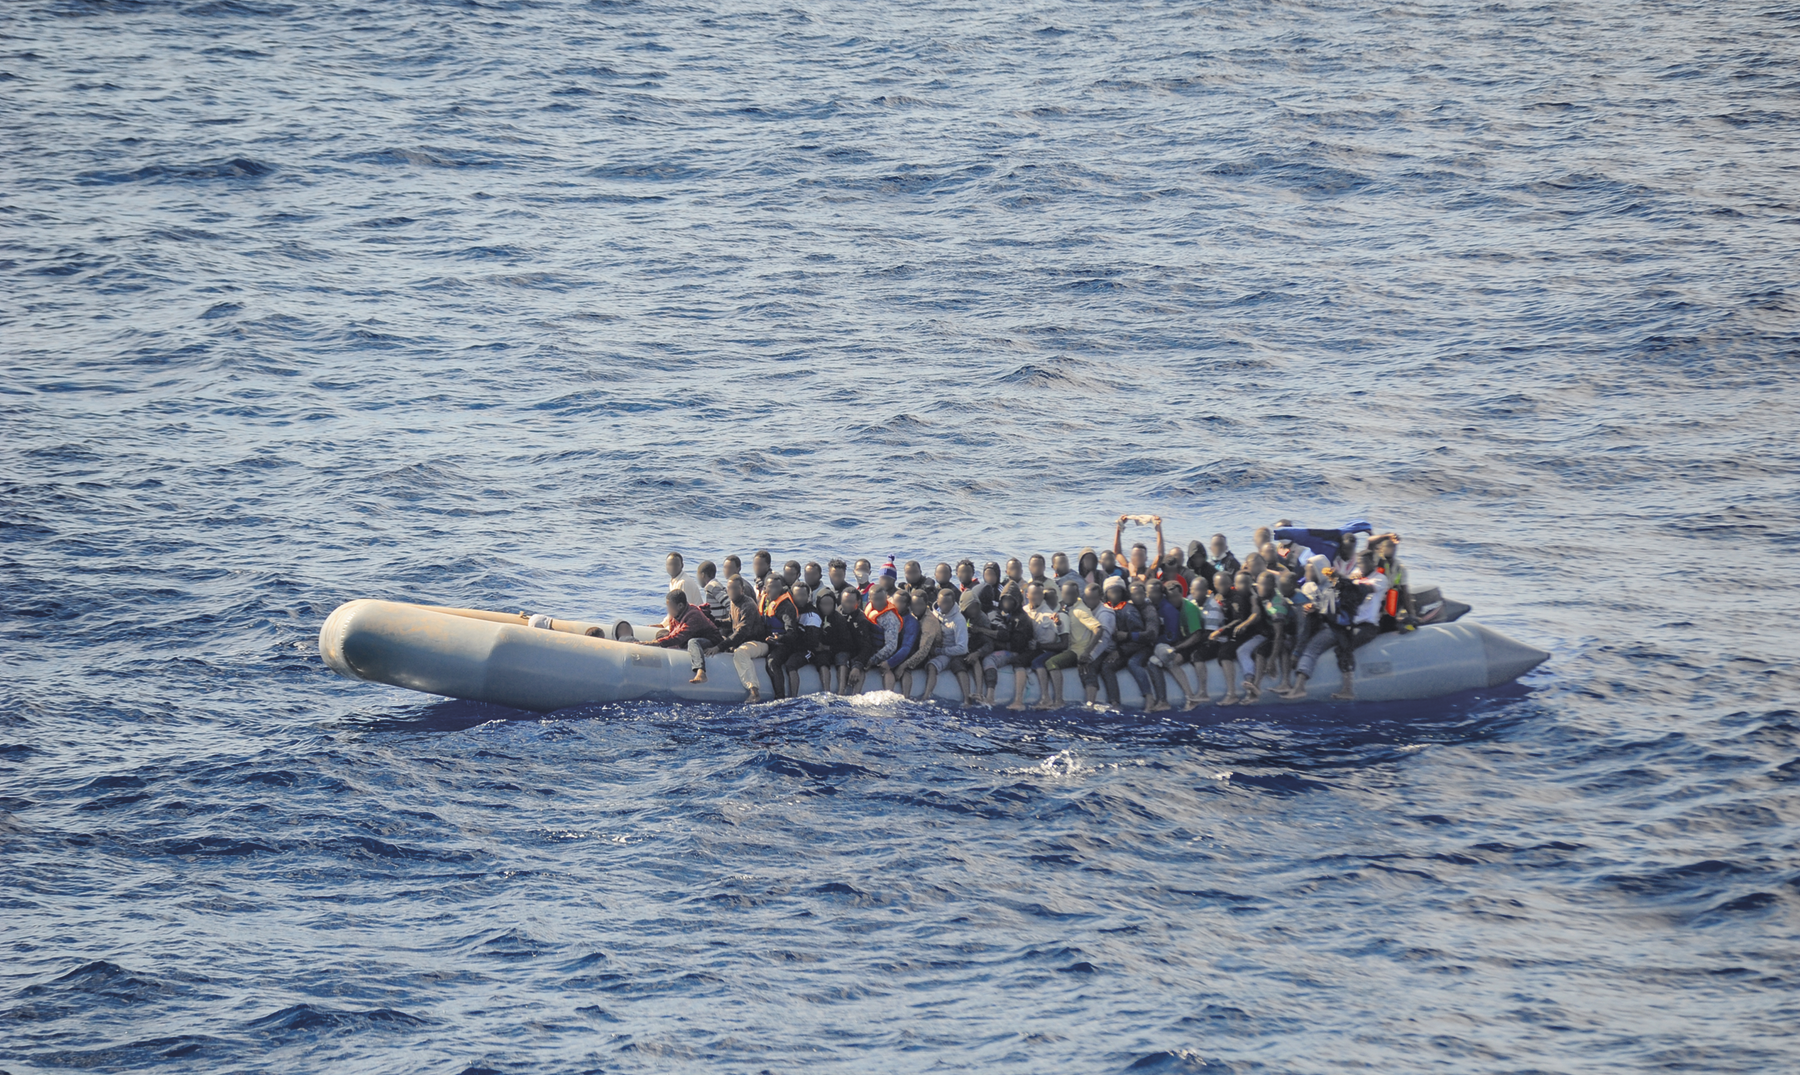 Fotografia. Um bote inflável com muitas pessoas agrupadas sobre ele, navegando no mar.